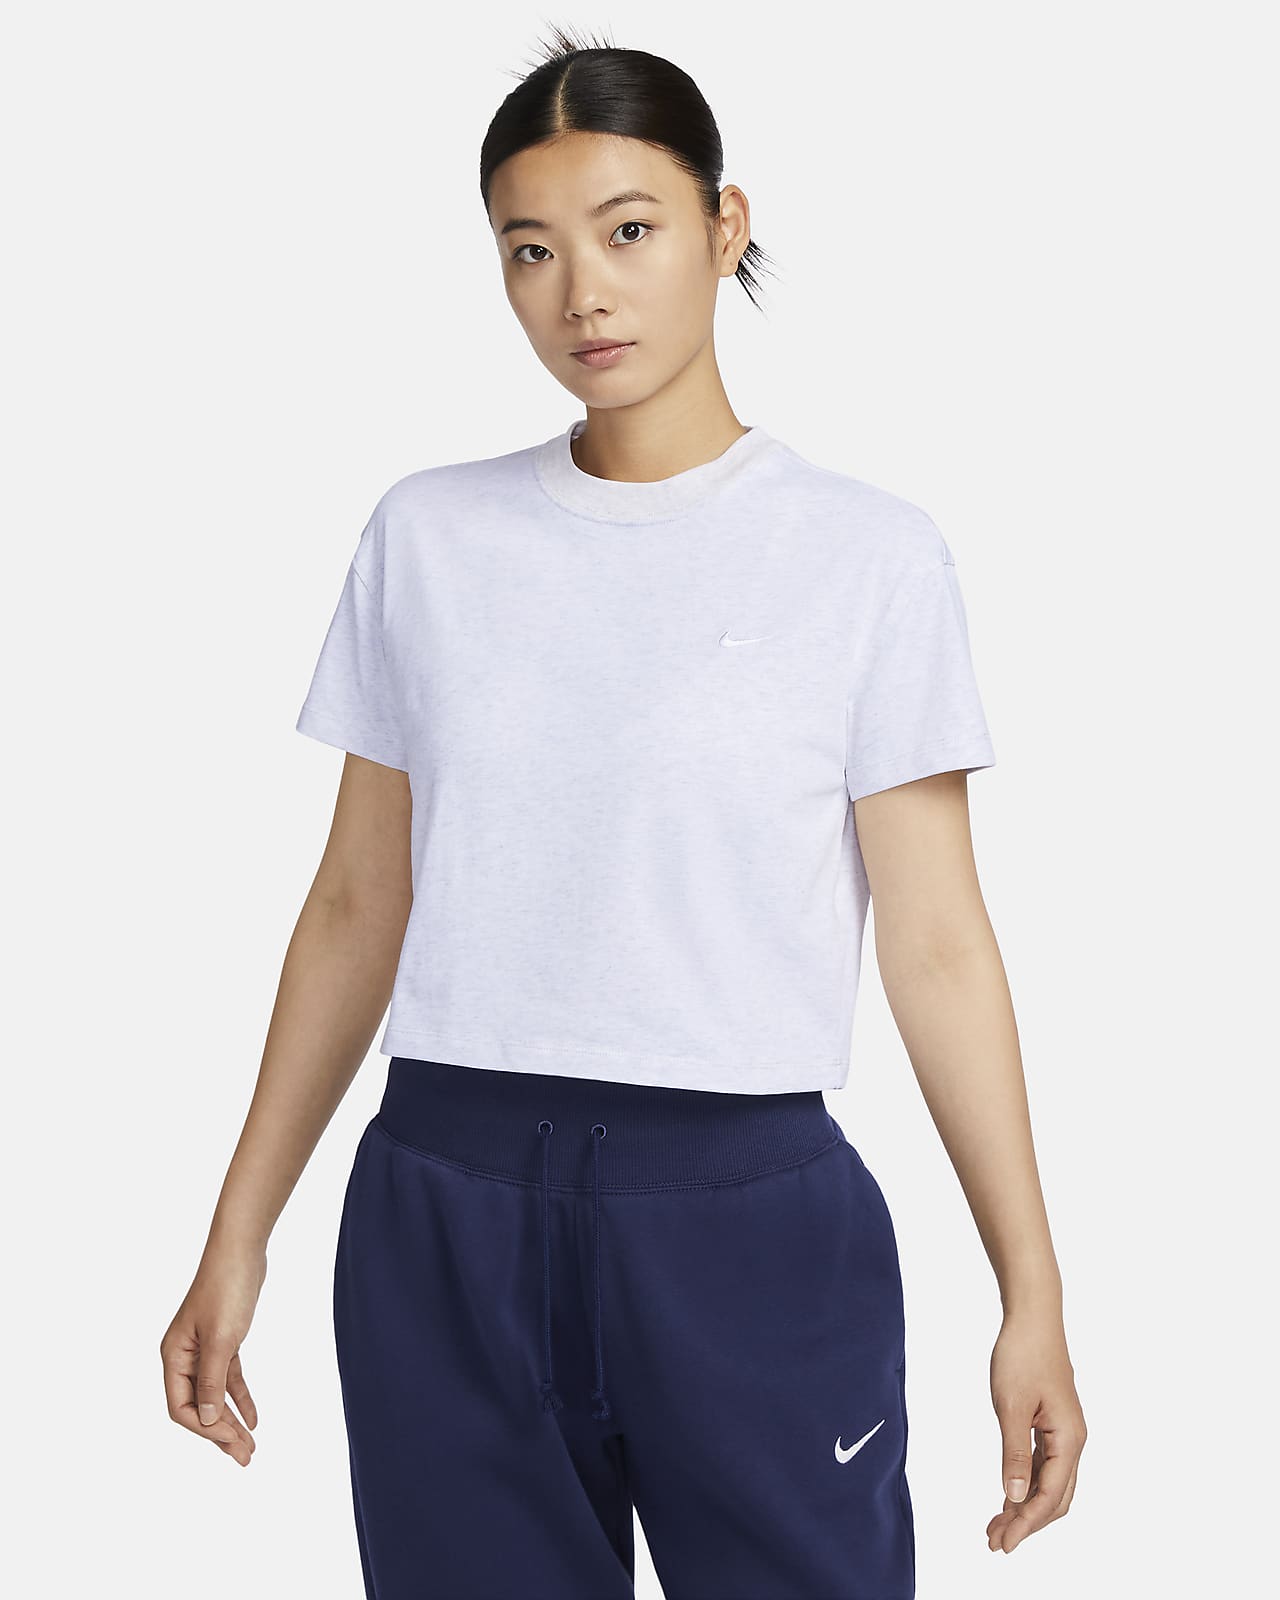 NikeLab 女子T恤